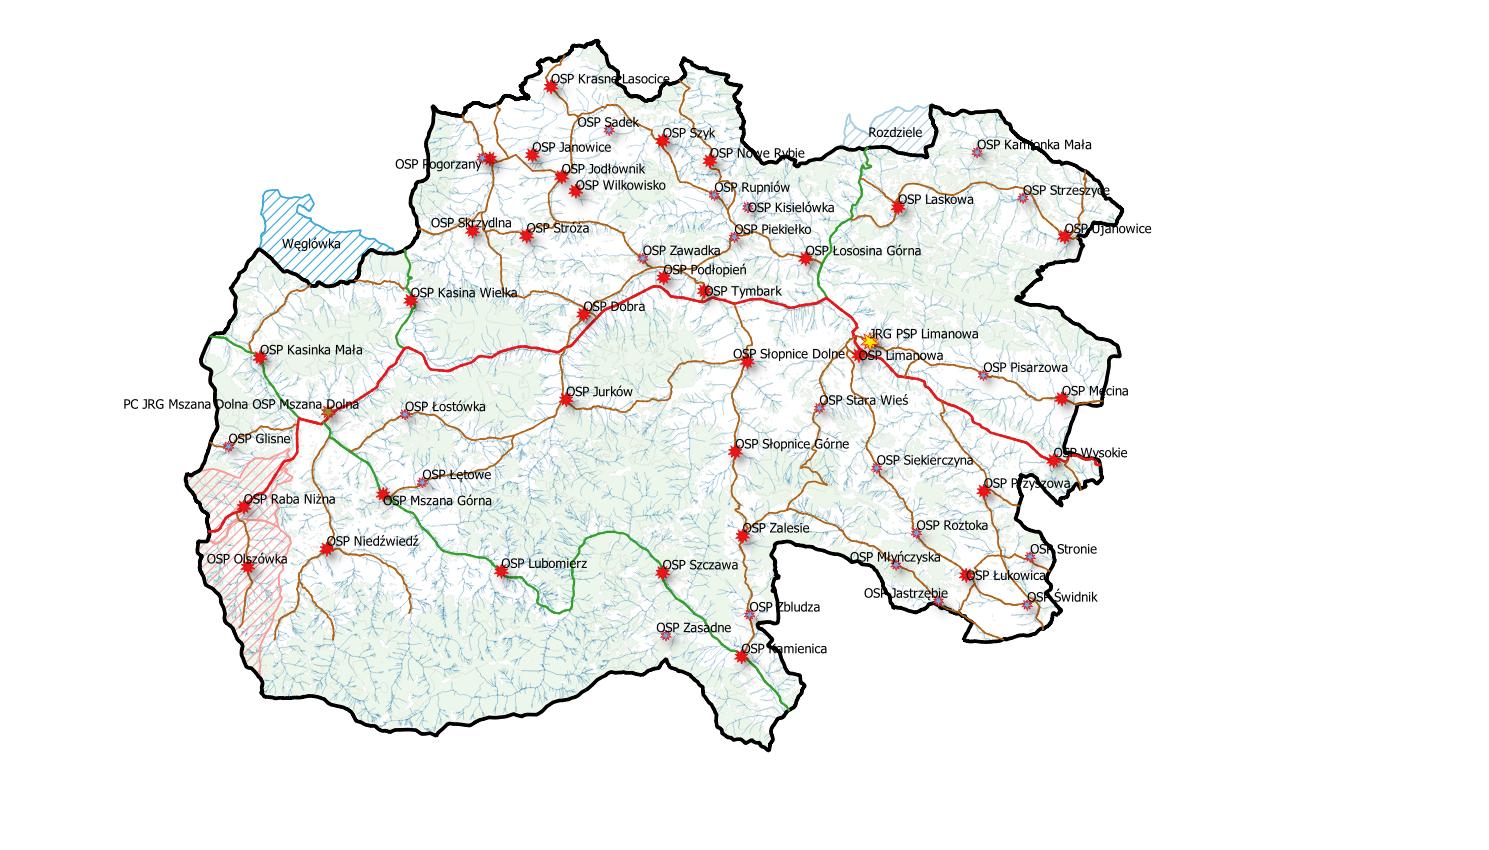 Lokalizacja jednostek ochrony przeciwpożarowej na terenie powiatu (kolorem czerwonym zaznaczono podmioty KSRG)